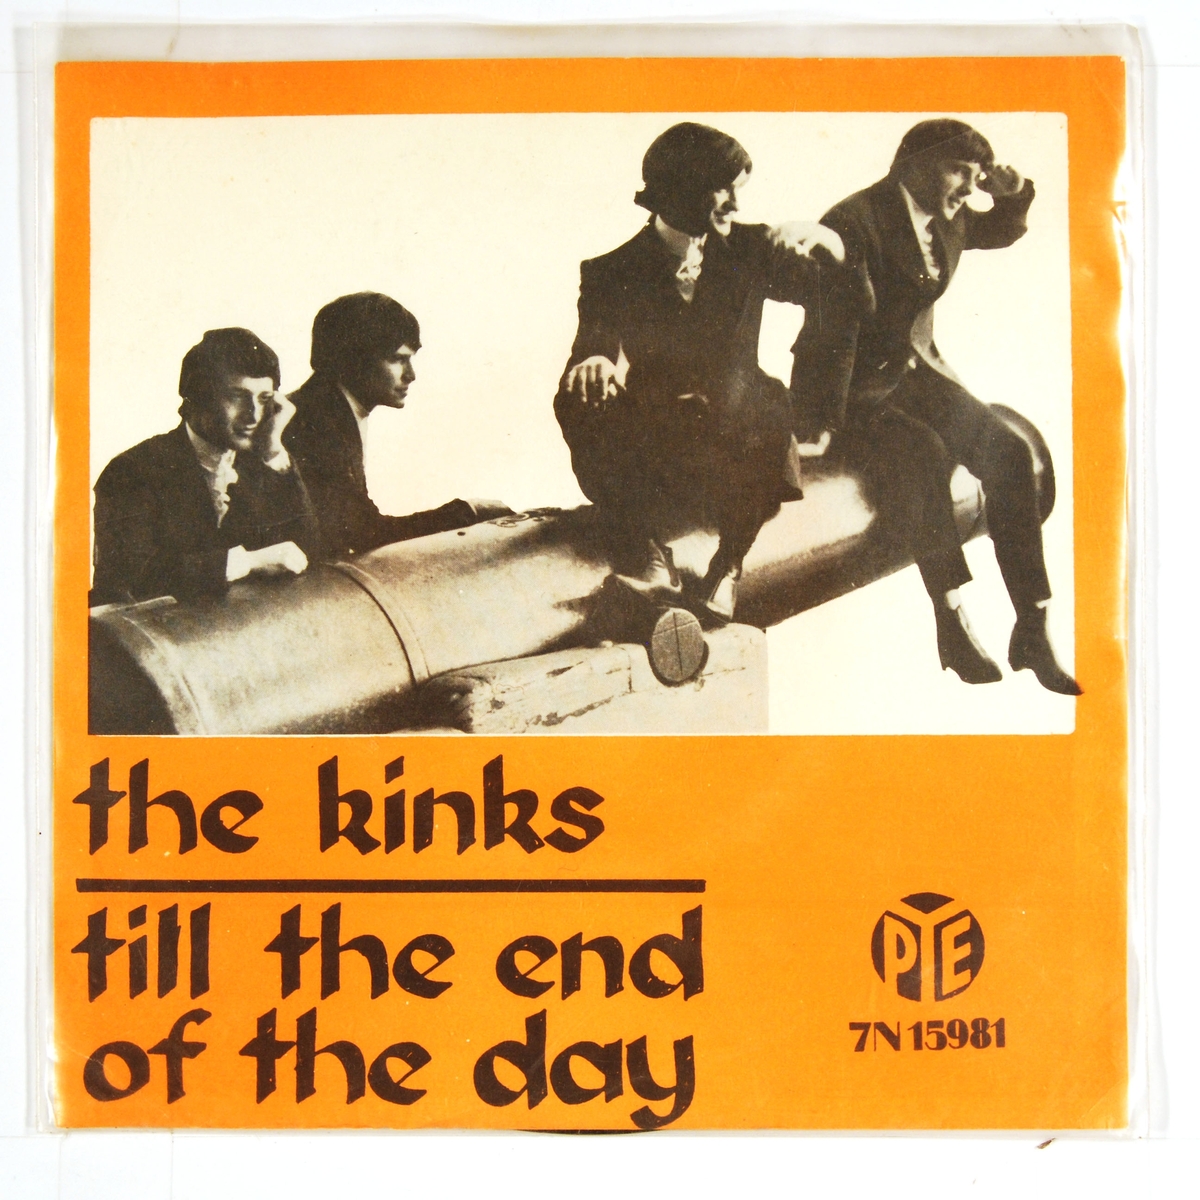 Bilde av medlemmene i "The Kinks" som står ved og sitter på en kanon.